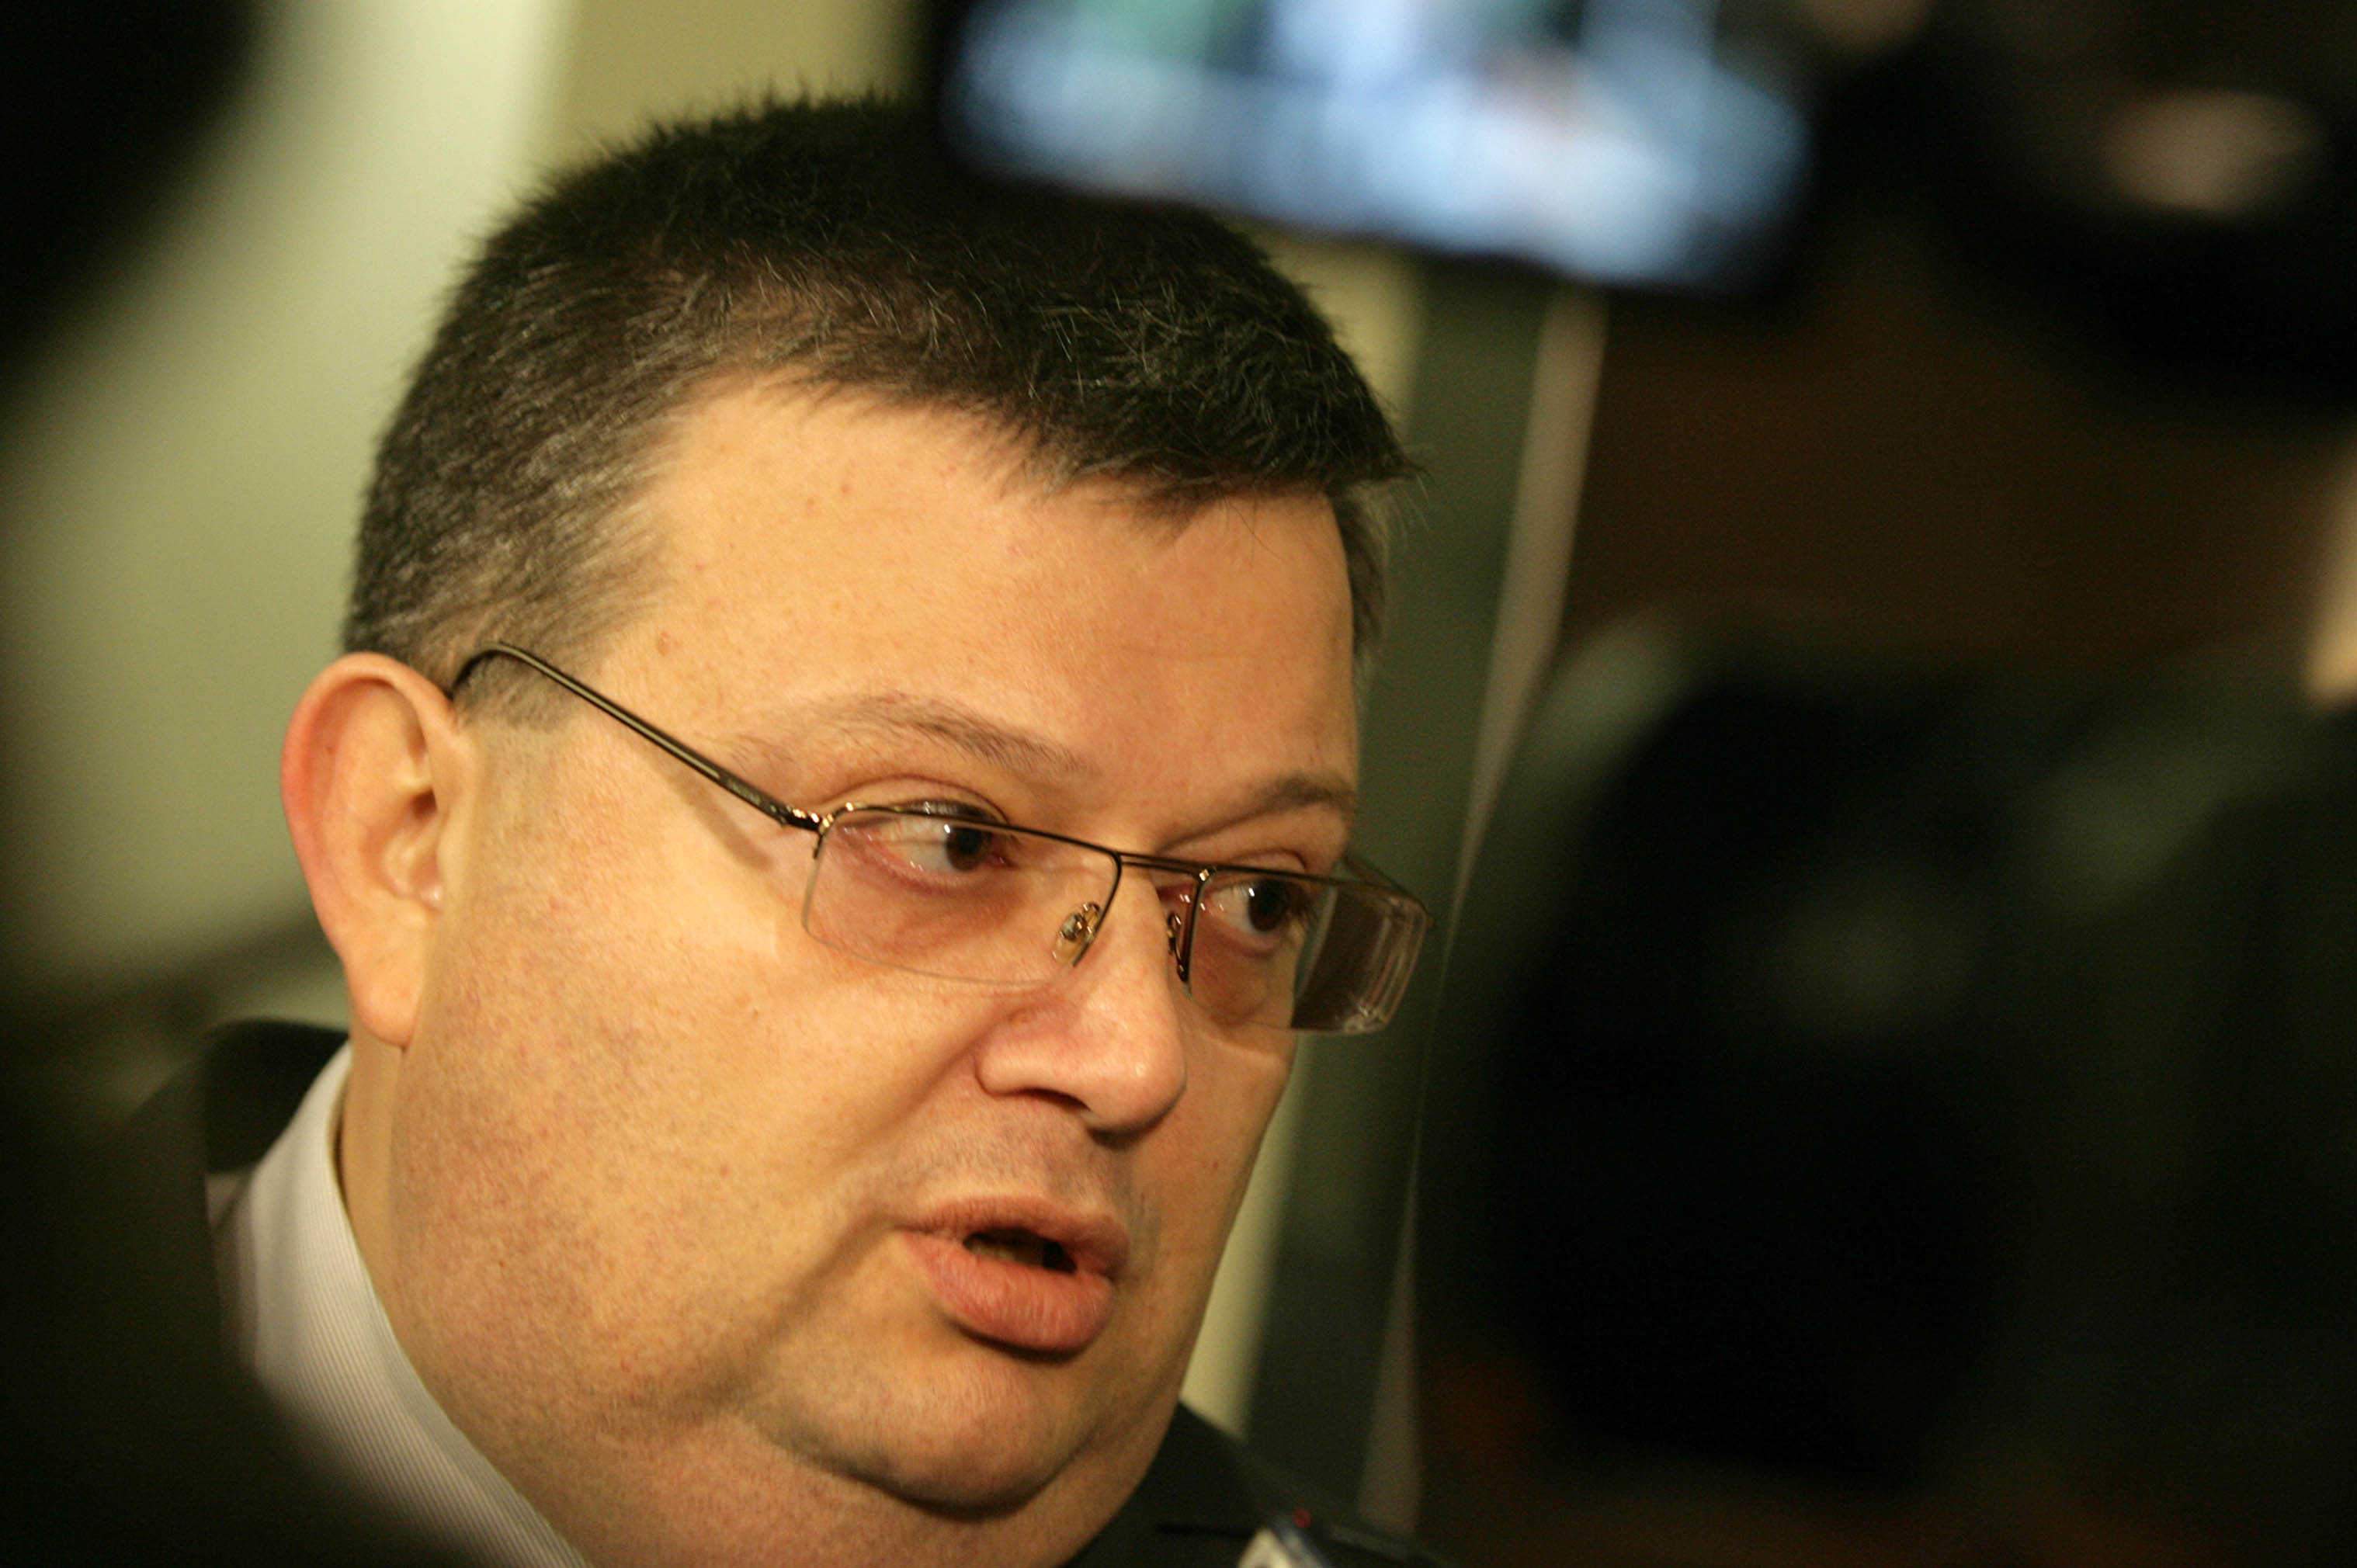 Отговорът на Сотир Цацаров потвърждава думите на Слави Трифонов, че двамата имат близки позиции